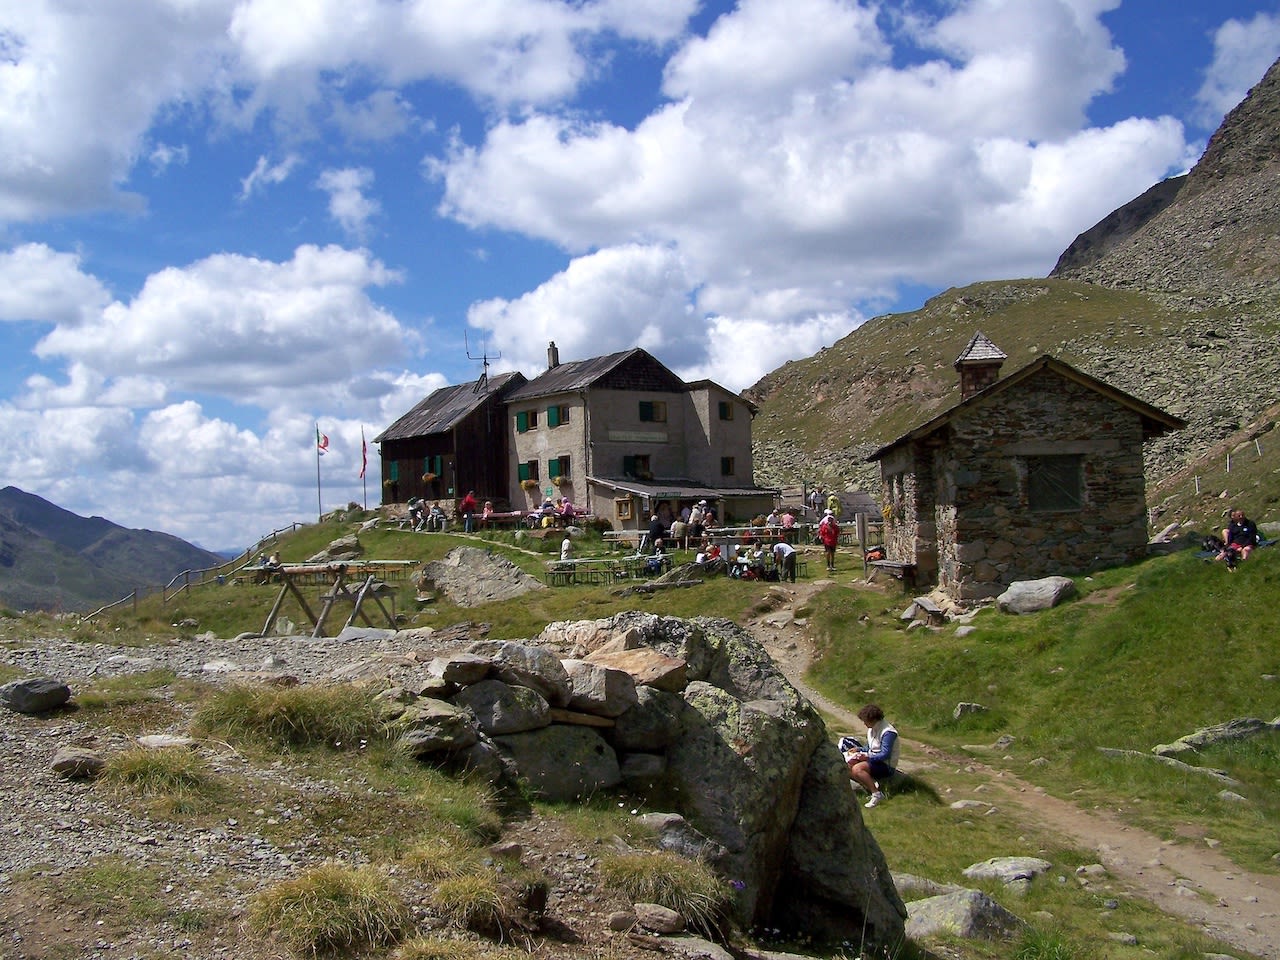 Ook in de zomer zijn de berghutten in de omgeving drukbezocht. Foto: Adobe Stock / Helmut.H